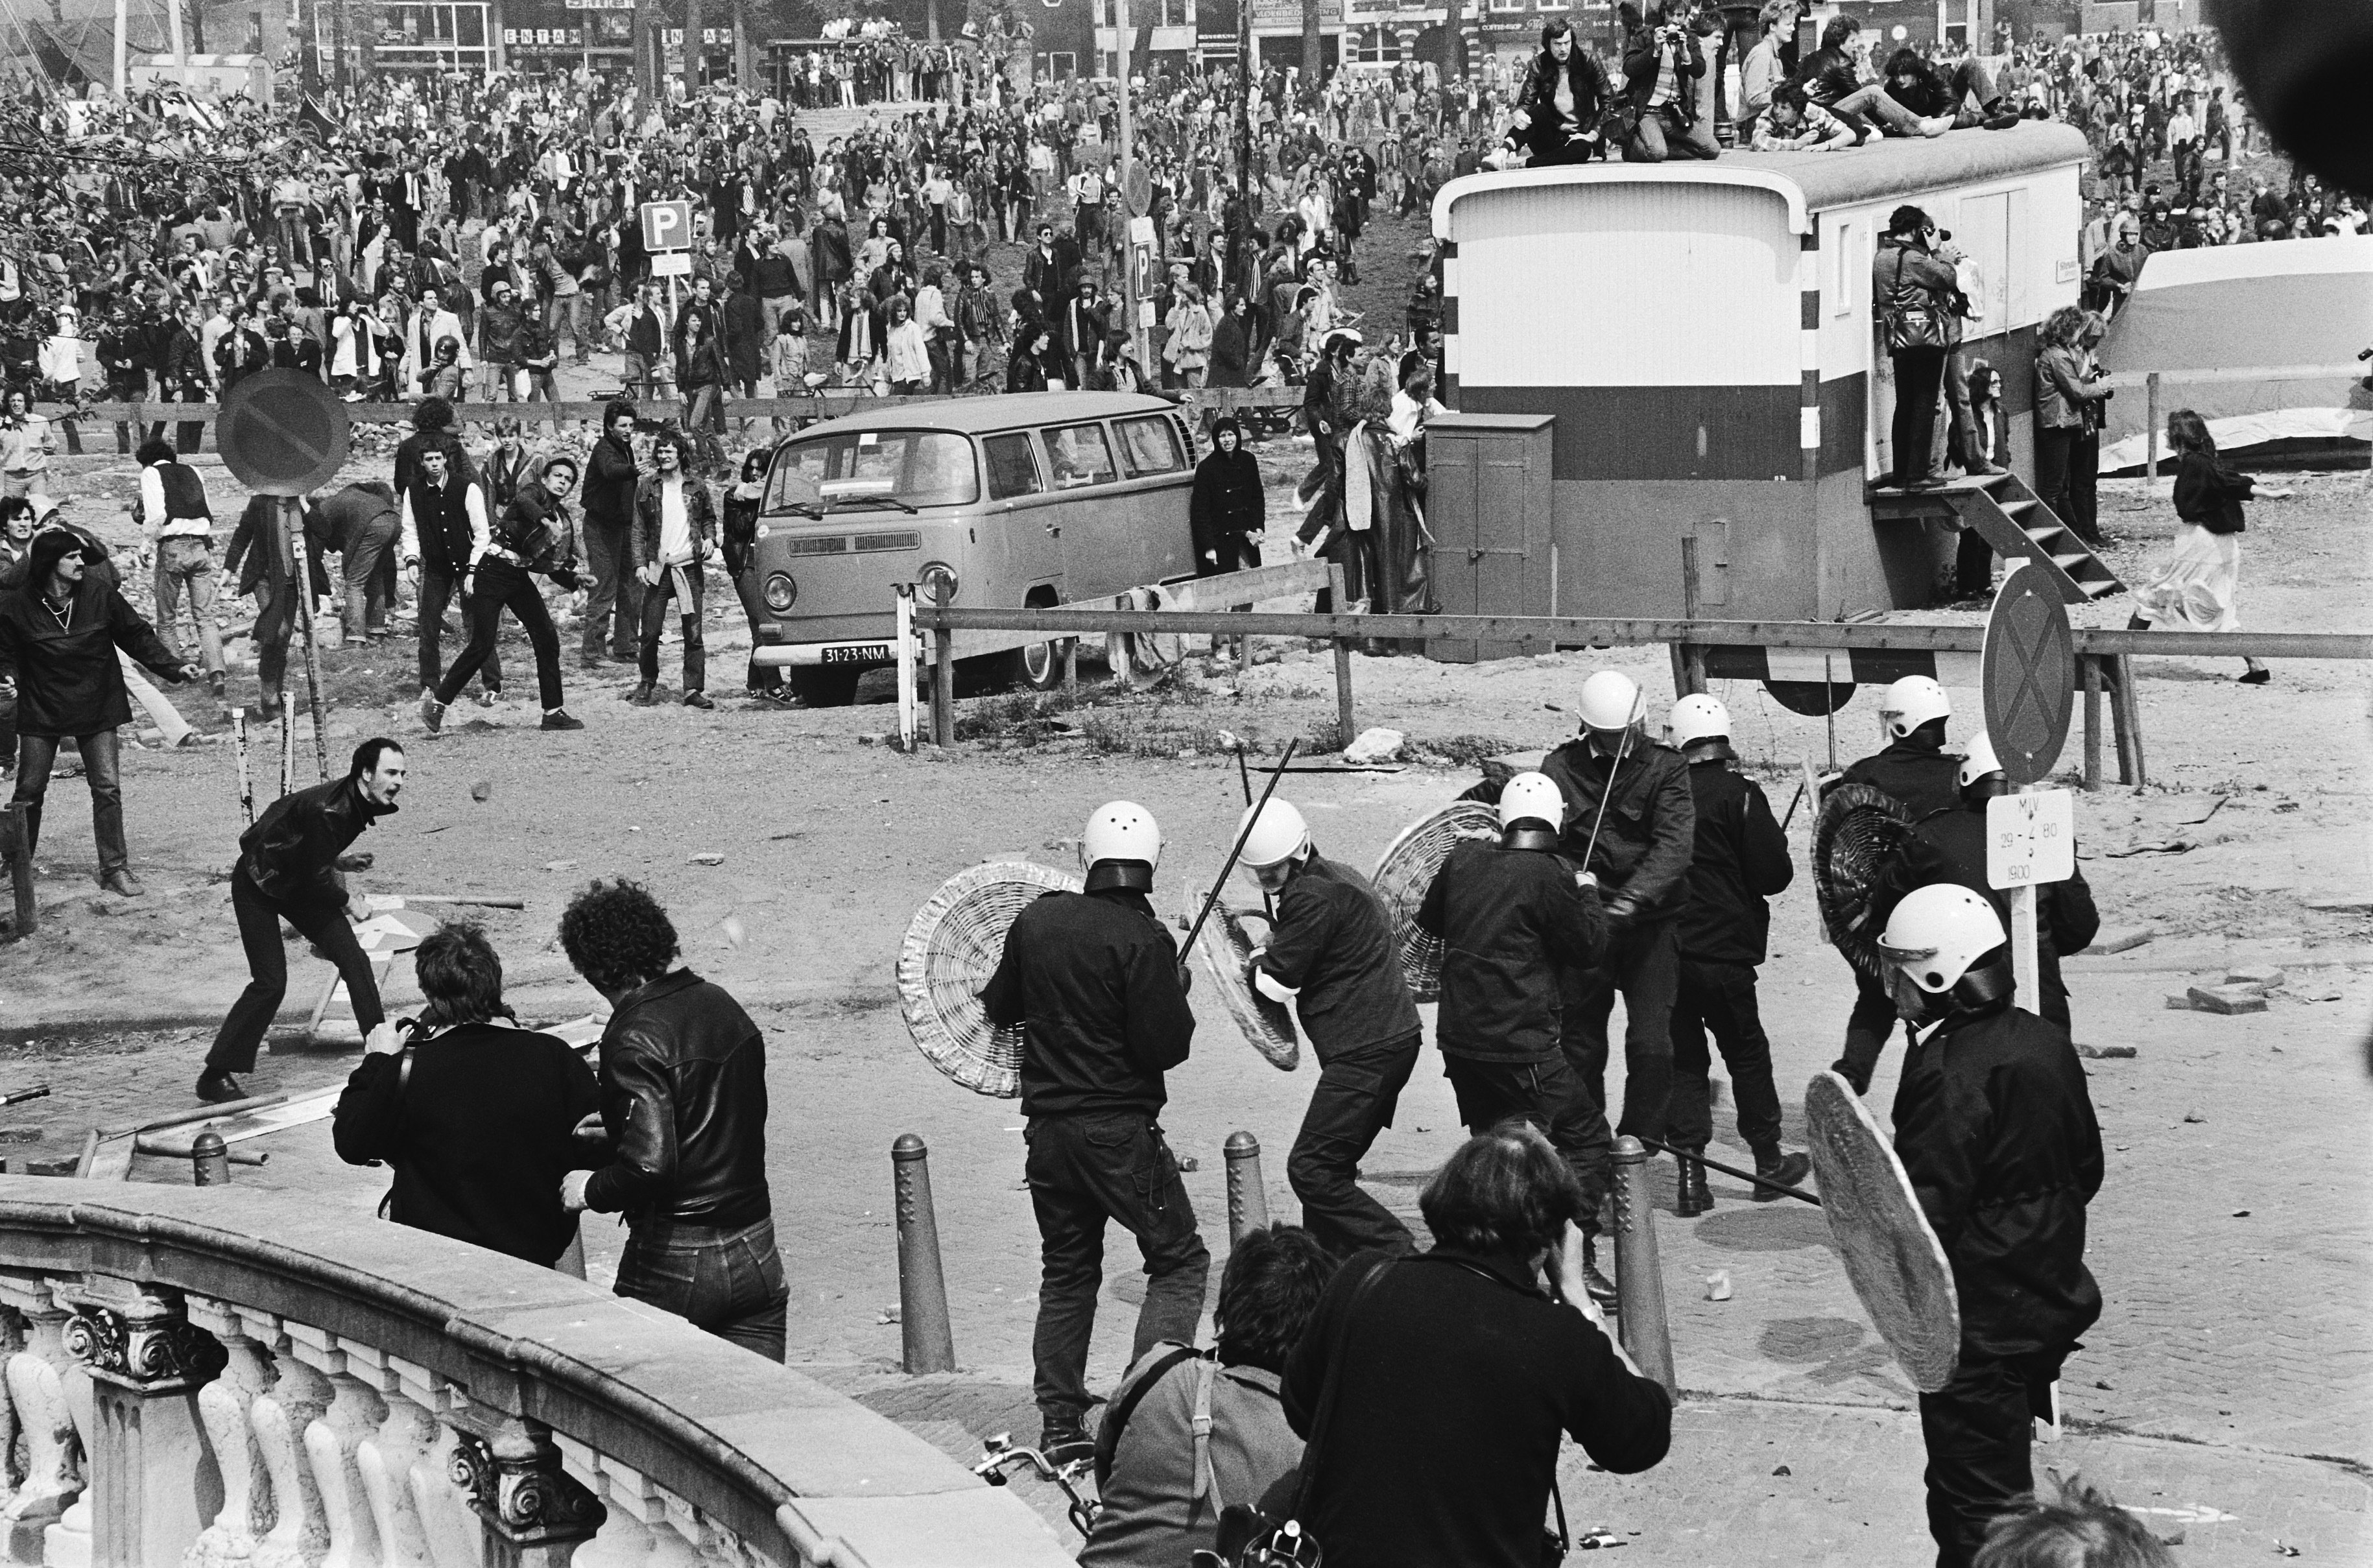 Schauplatz im Roman "De slag om de Blauwbrug" von A.F.Th. van der Heijden: Die Blauwbrug in Amsterdam, wo am Tag der Inthronisation von Königin Beatrix (30. April 1980) Unruhen zwischen den „Krakers“ und der Polizei stattgefunden haben.